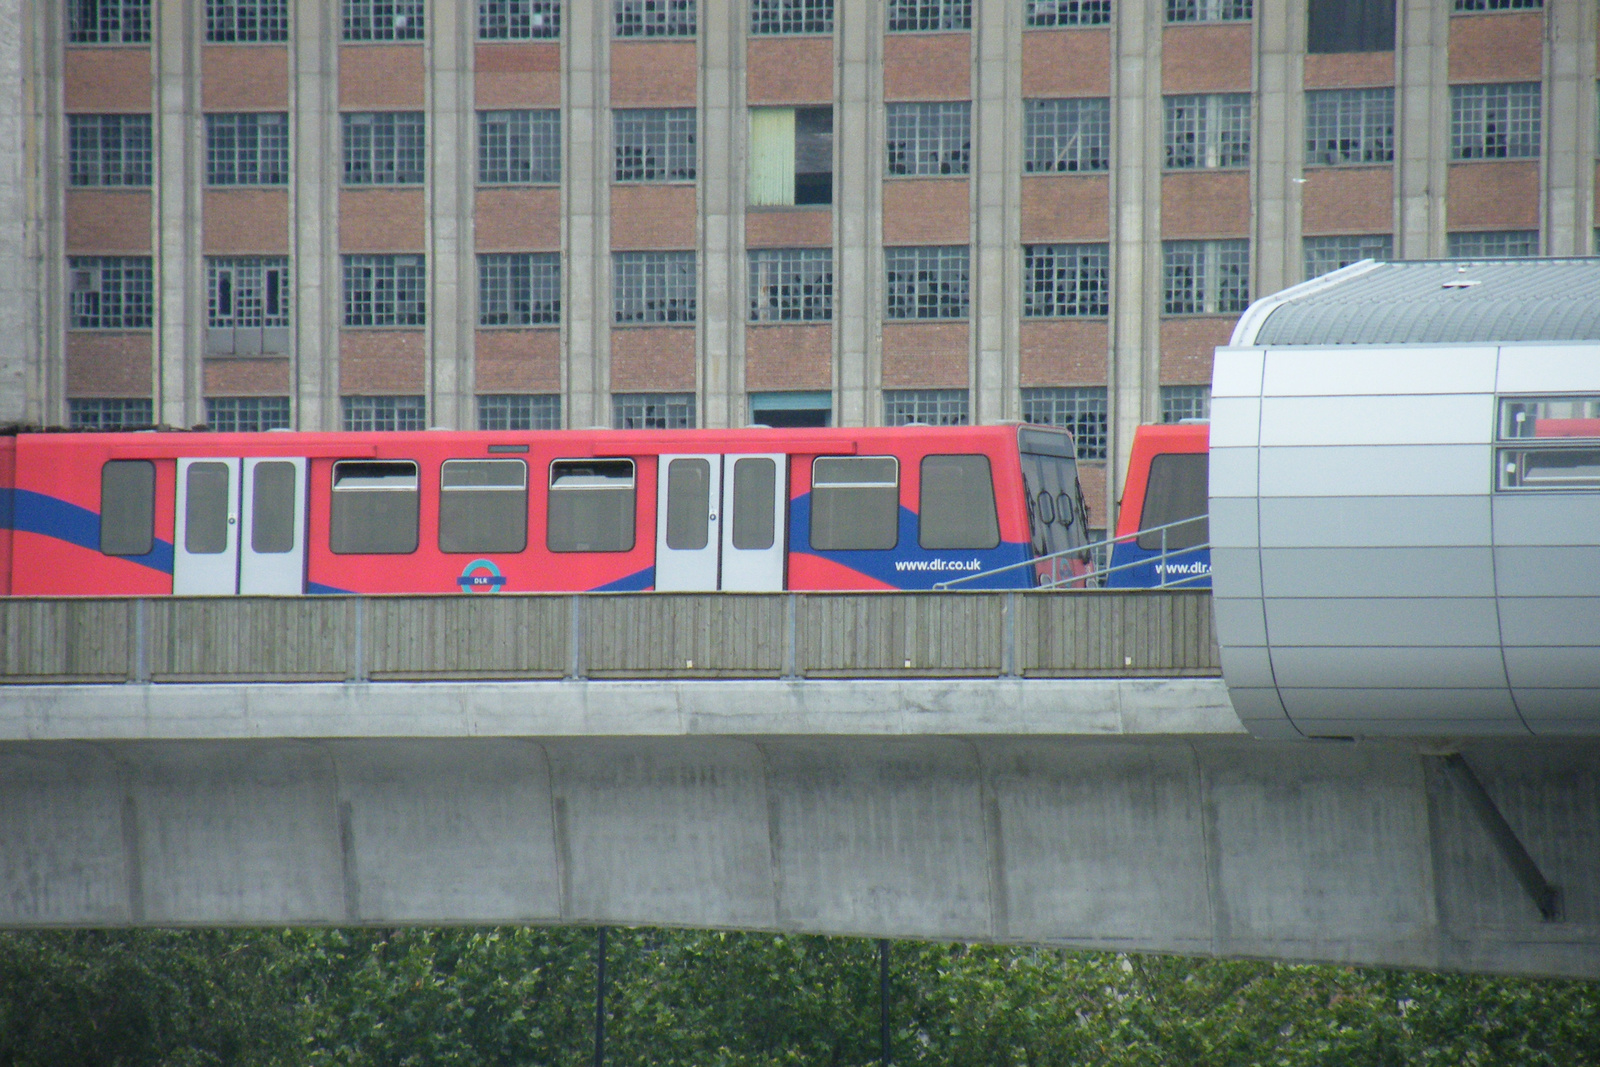 London2008. 529